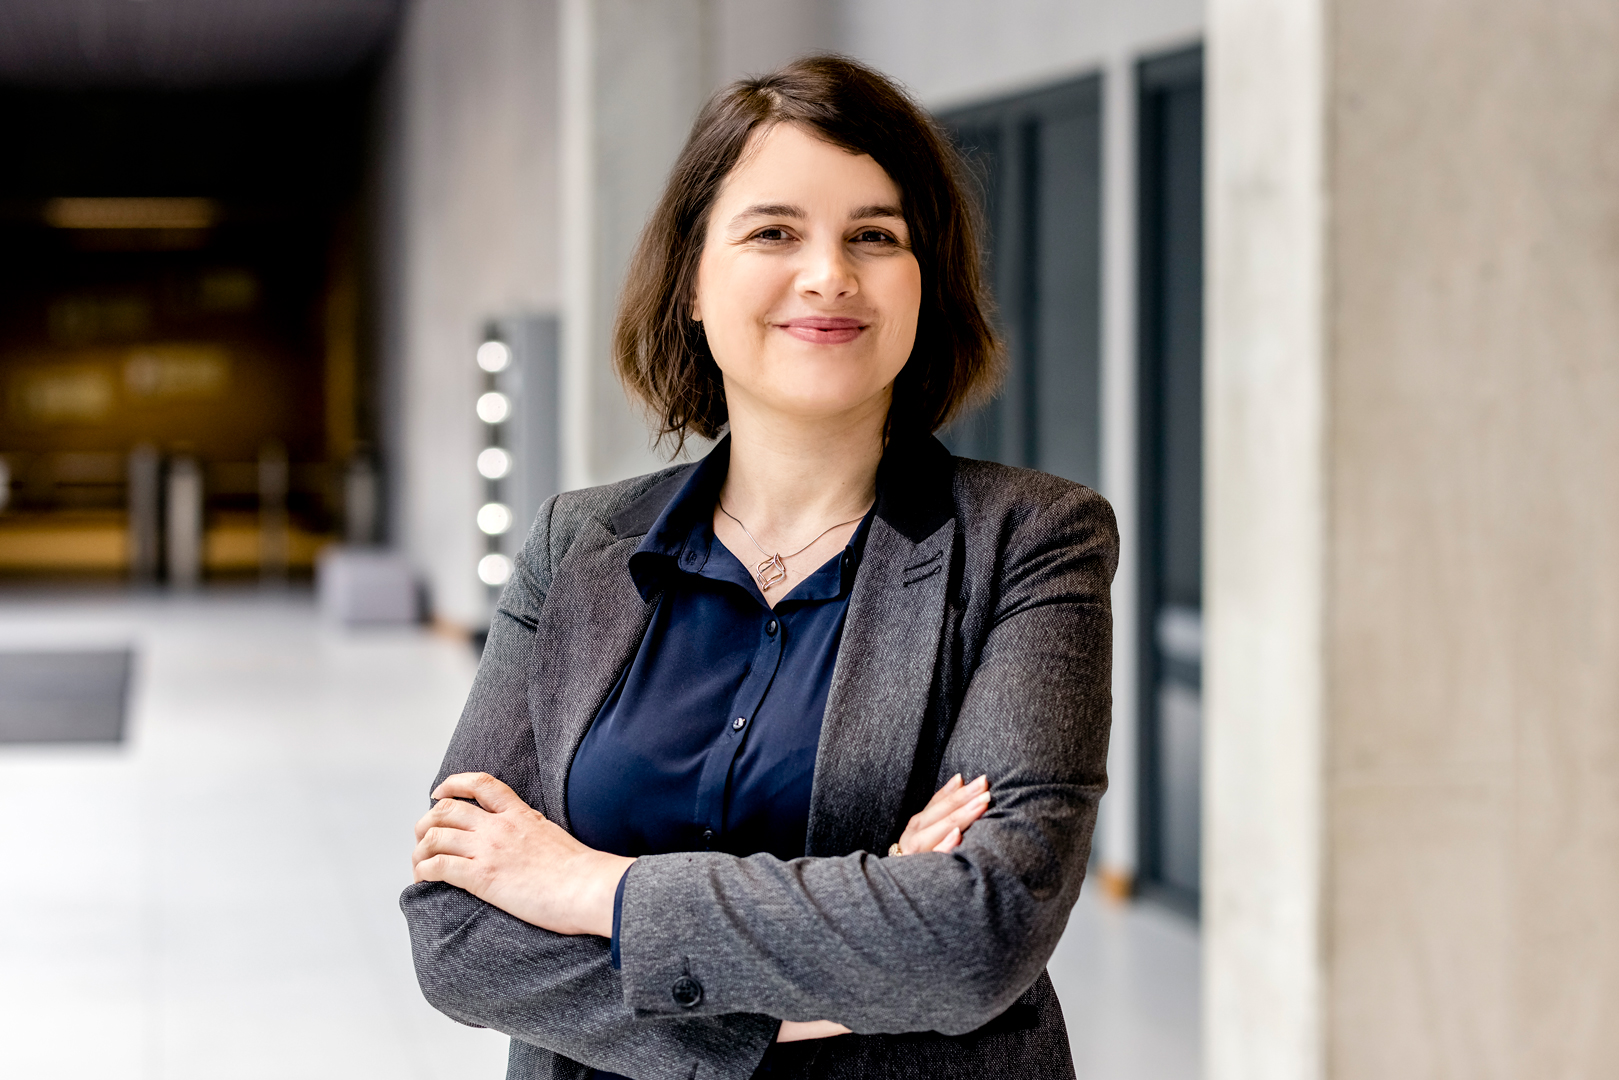 Agnieszka Hołownia-Niedzielska, Senior Solutions Consultant at Espeo Software